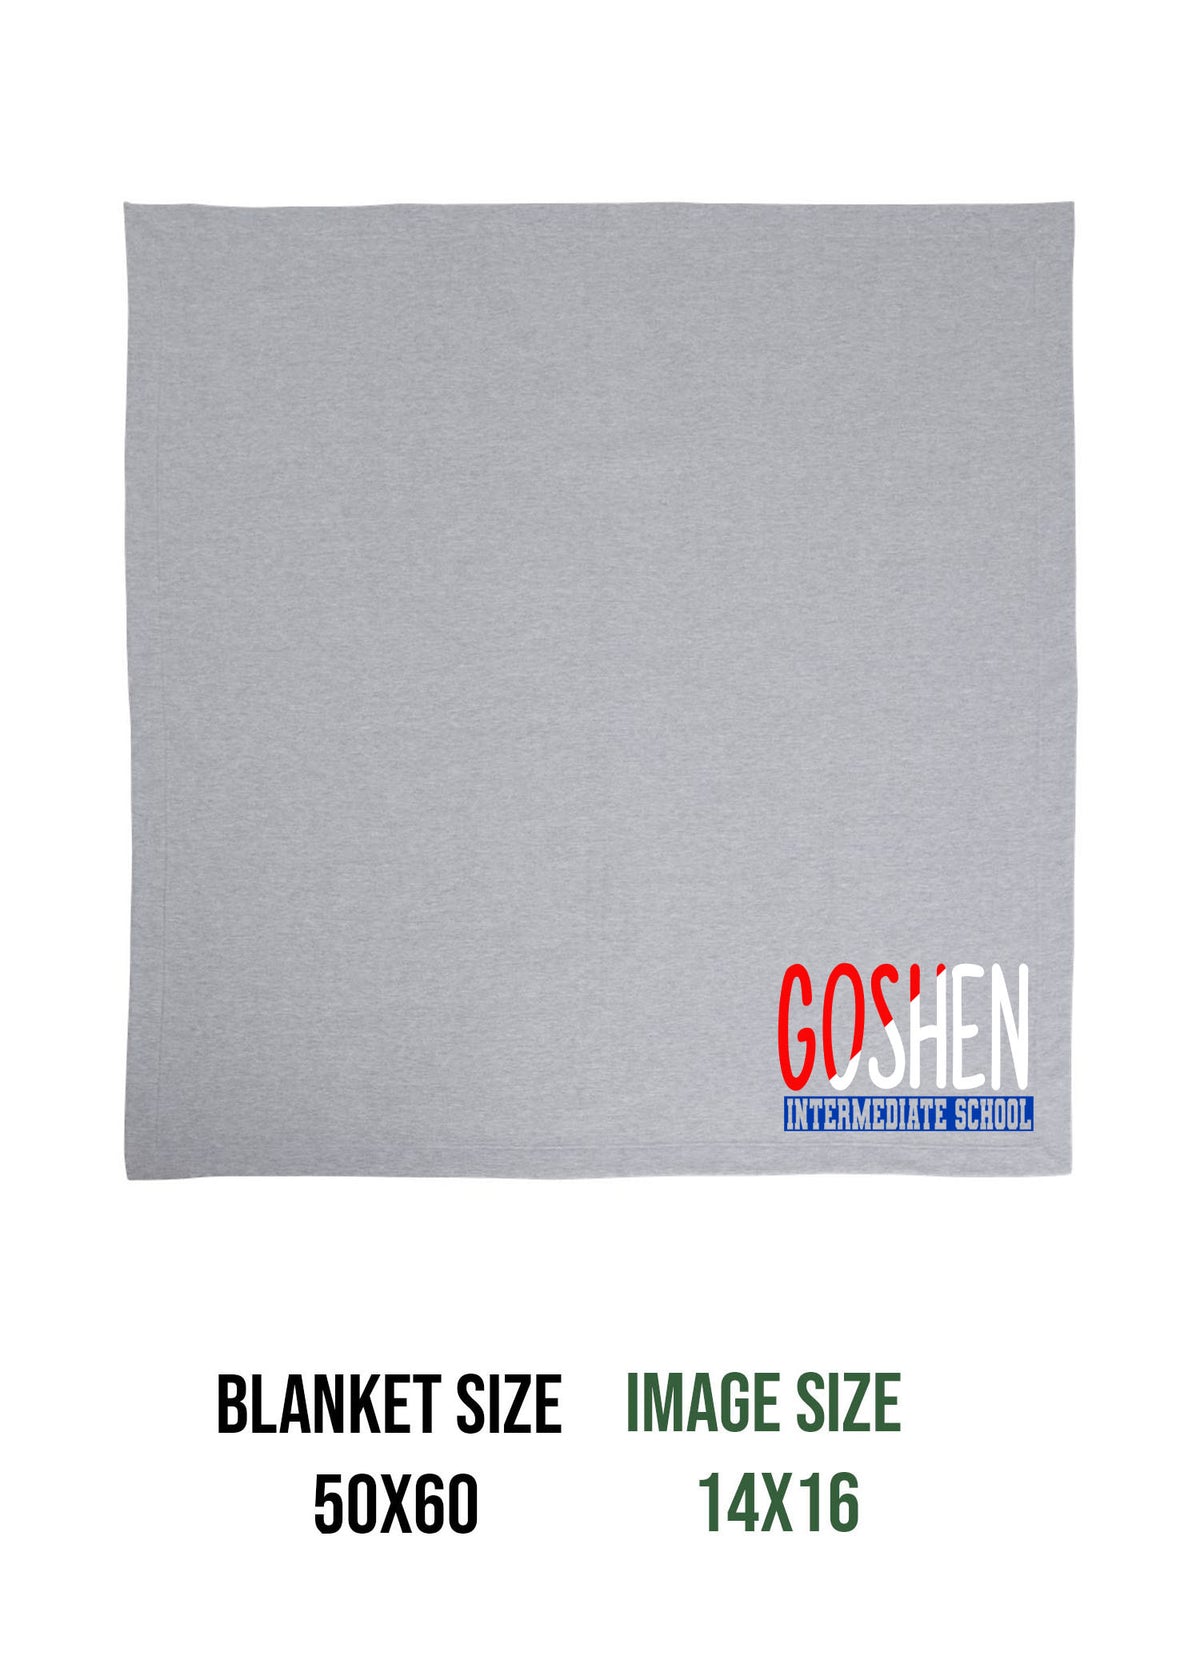 Goshen School Design 3 Blanket